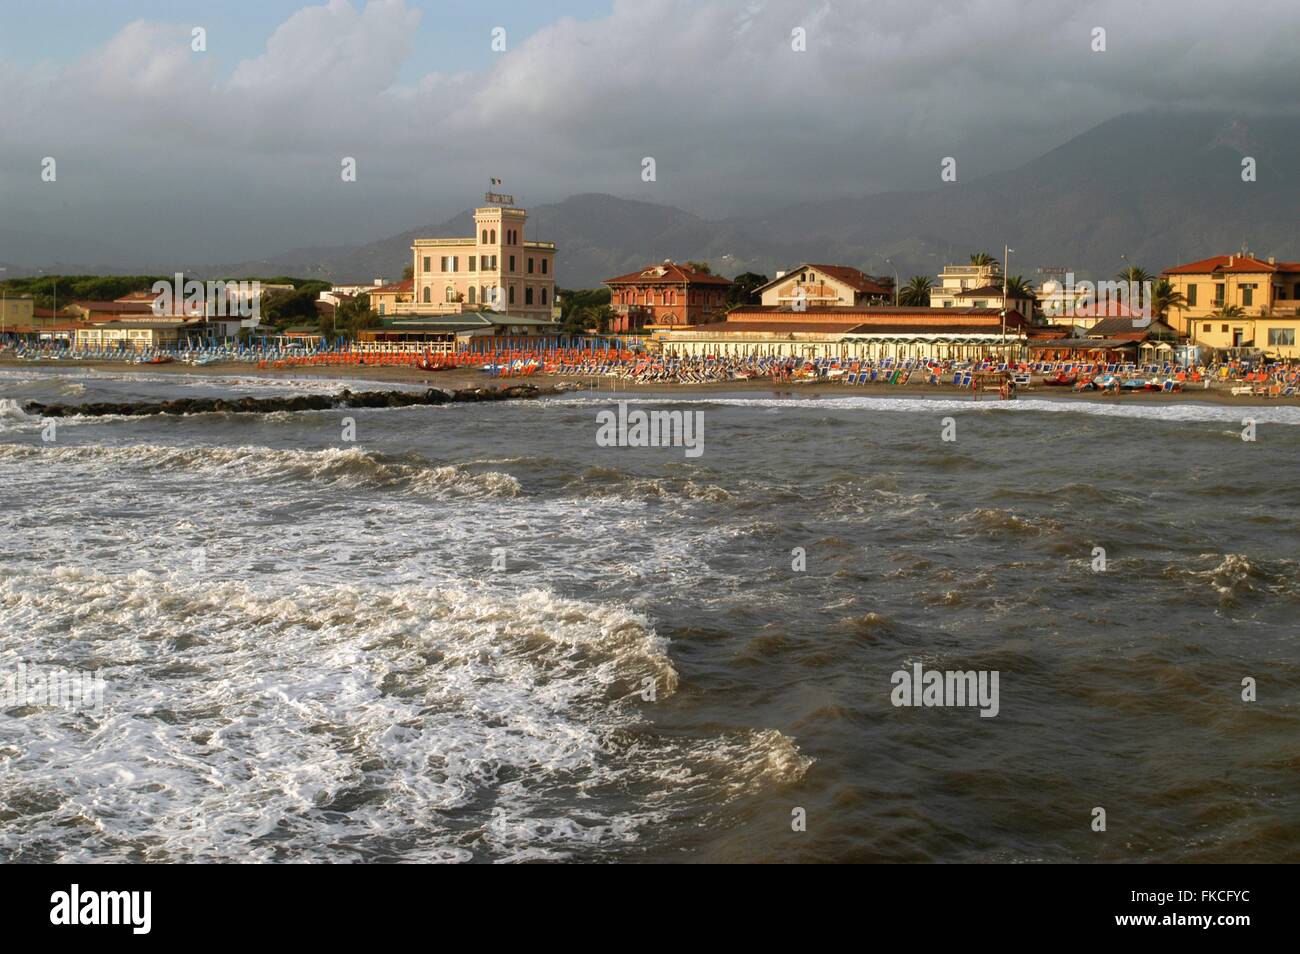 taly, the resort town Marina di Massa, on the coast of Tuscany Stock Photo